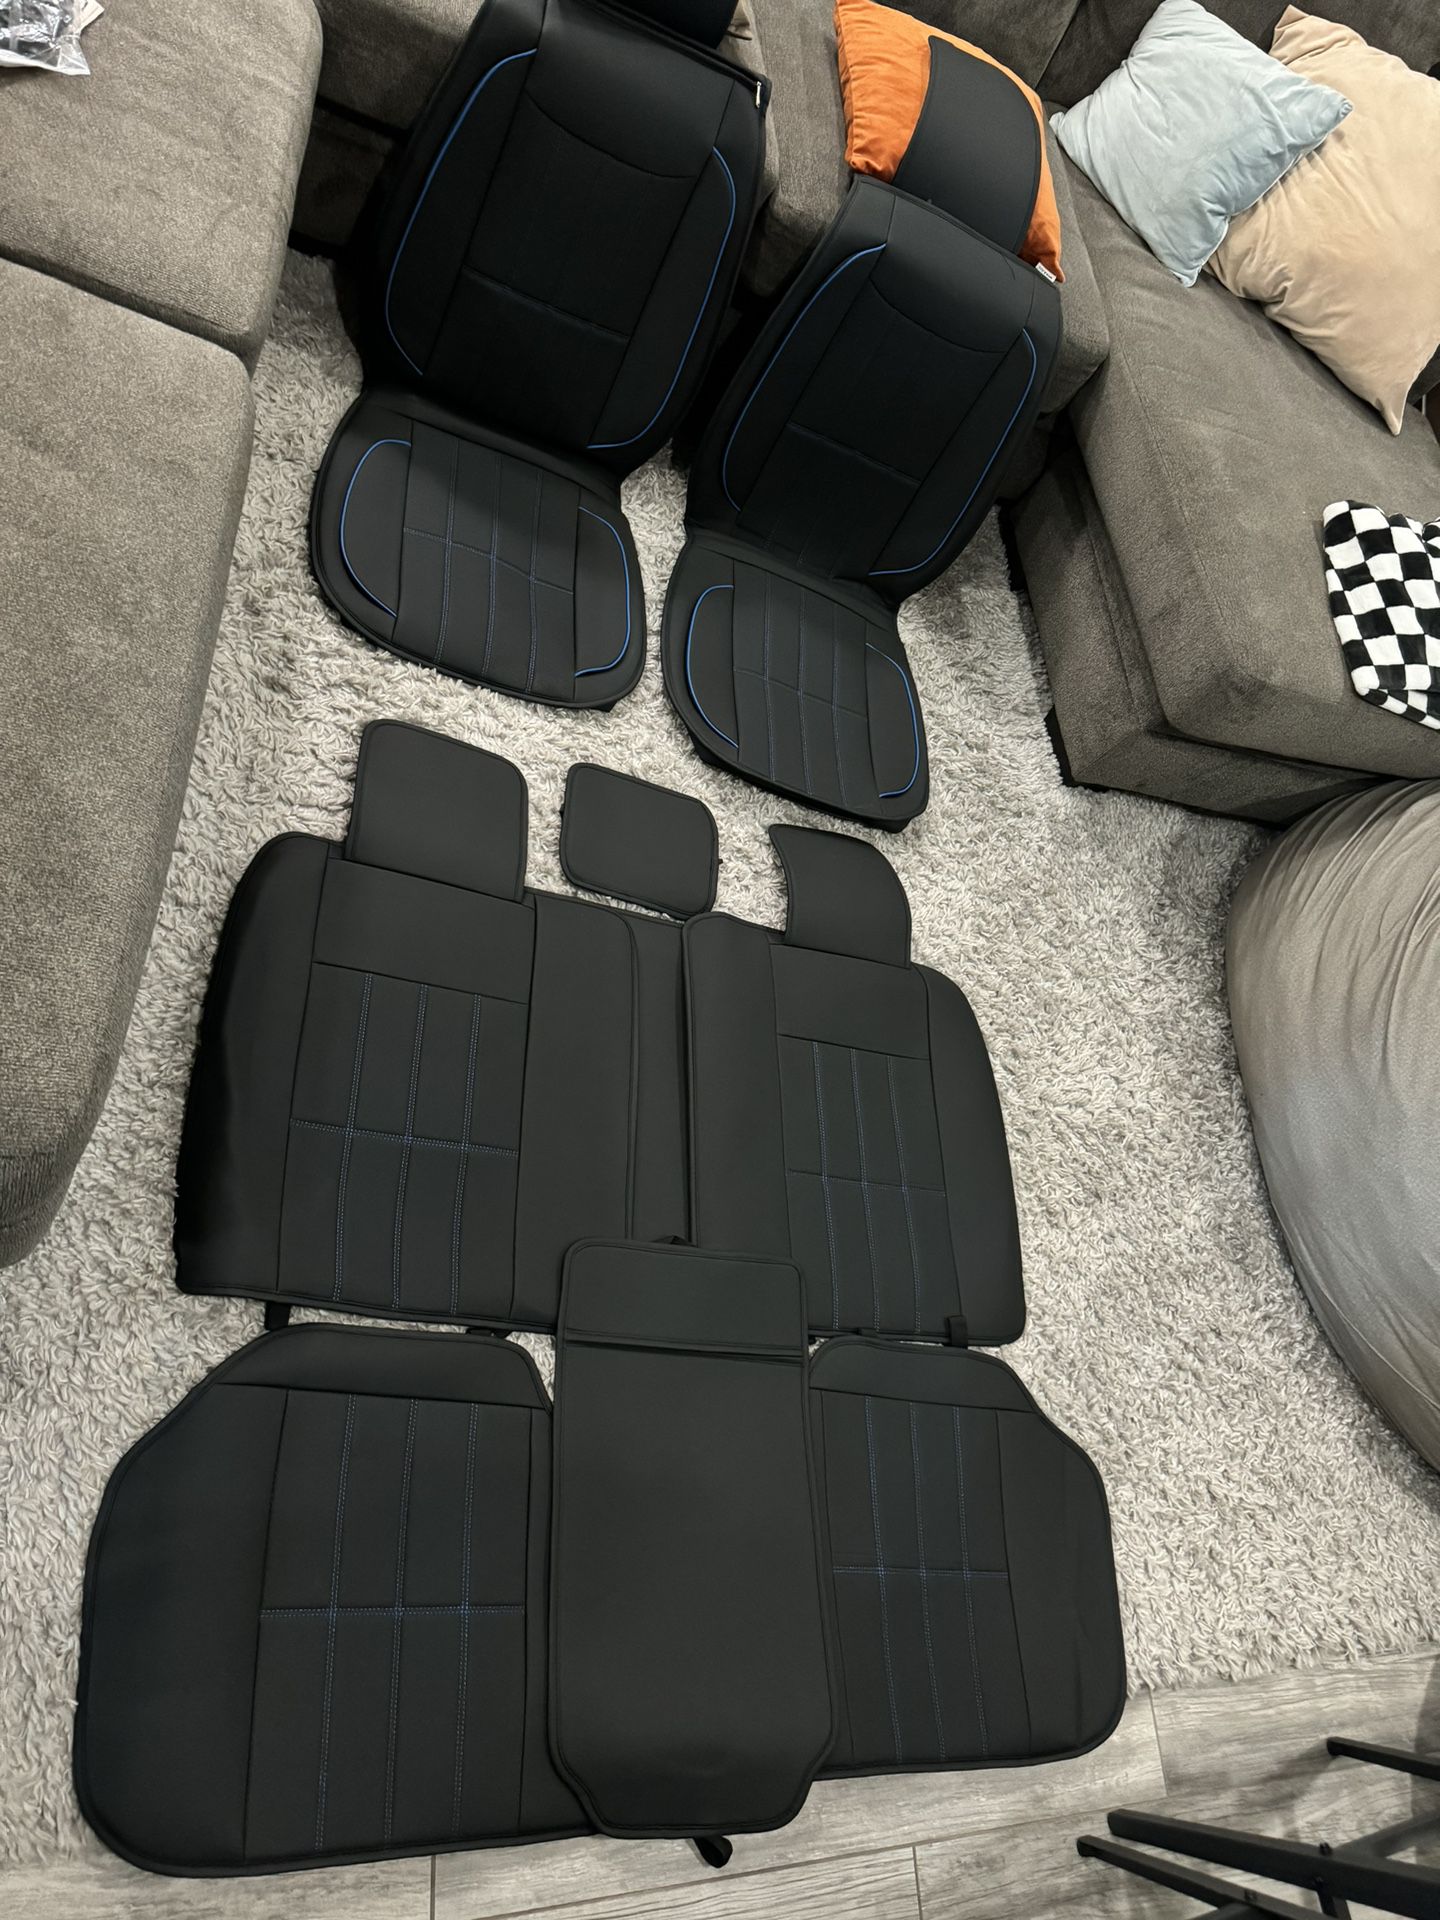 New Full Set Car Seat Covers For Trucks /suvs/sedans (universal)